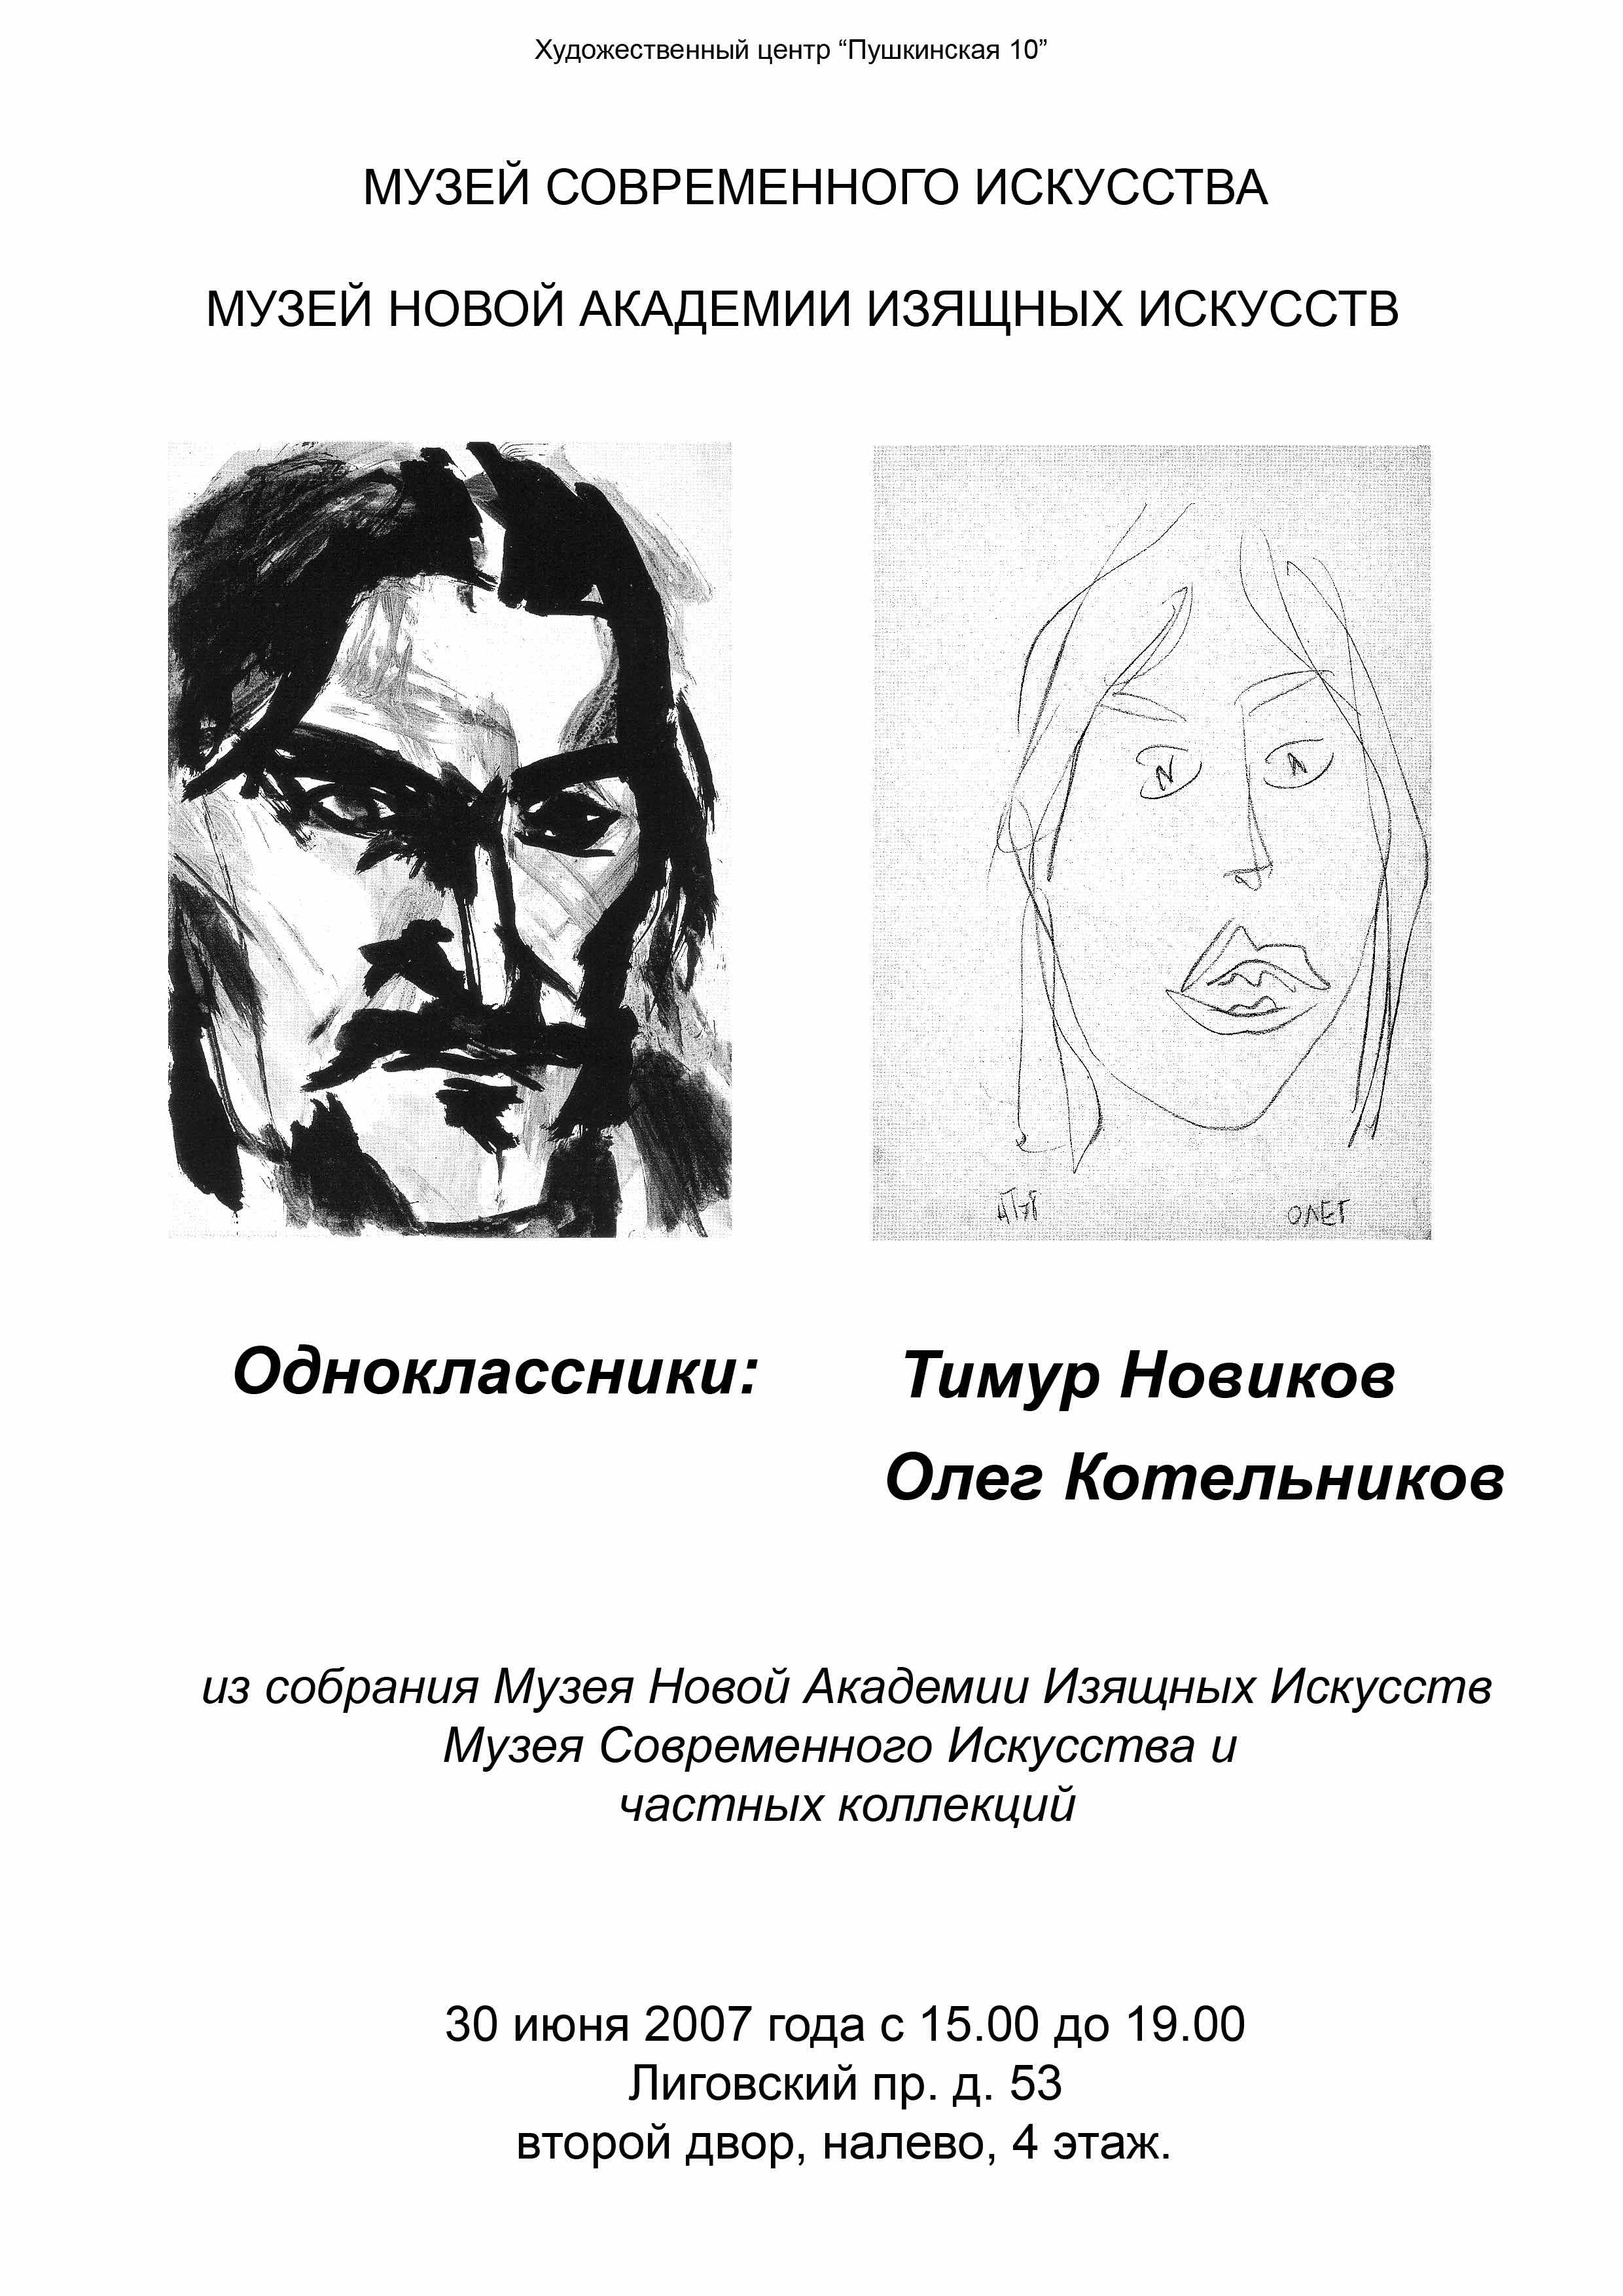 Одноклассники: О. Котельников и Т. Новиков